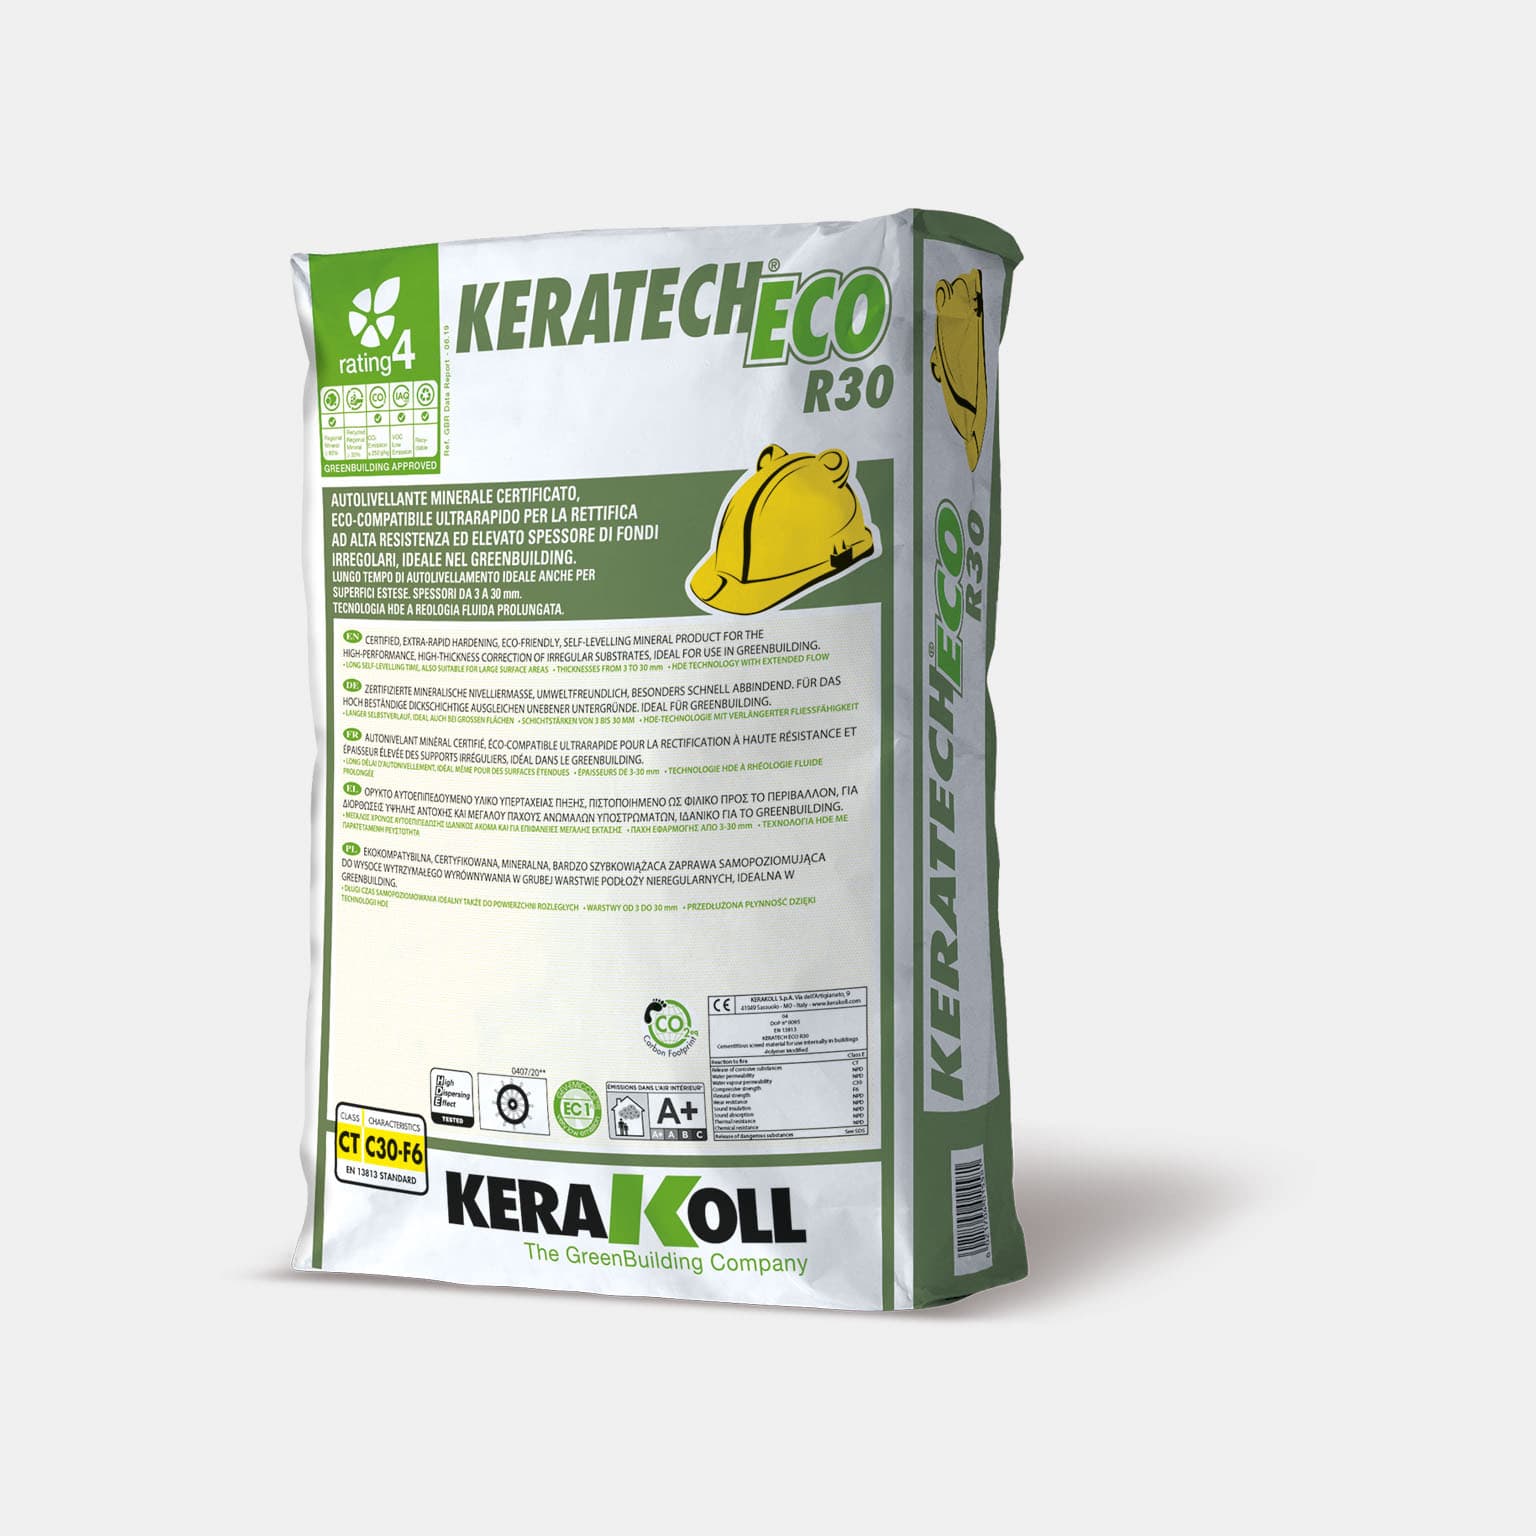 Kerakoll Keratech Eco R30: Ásványi eredetű, tanúsított, öko-kompatibilis, ultra gyors aljzatkiegyenlítő anyag, egyenetlen aljzatok nagy ellenálló képességű és rétegvastagságú javítására. 